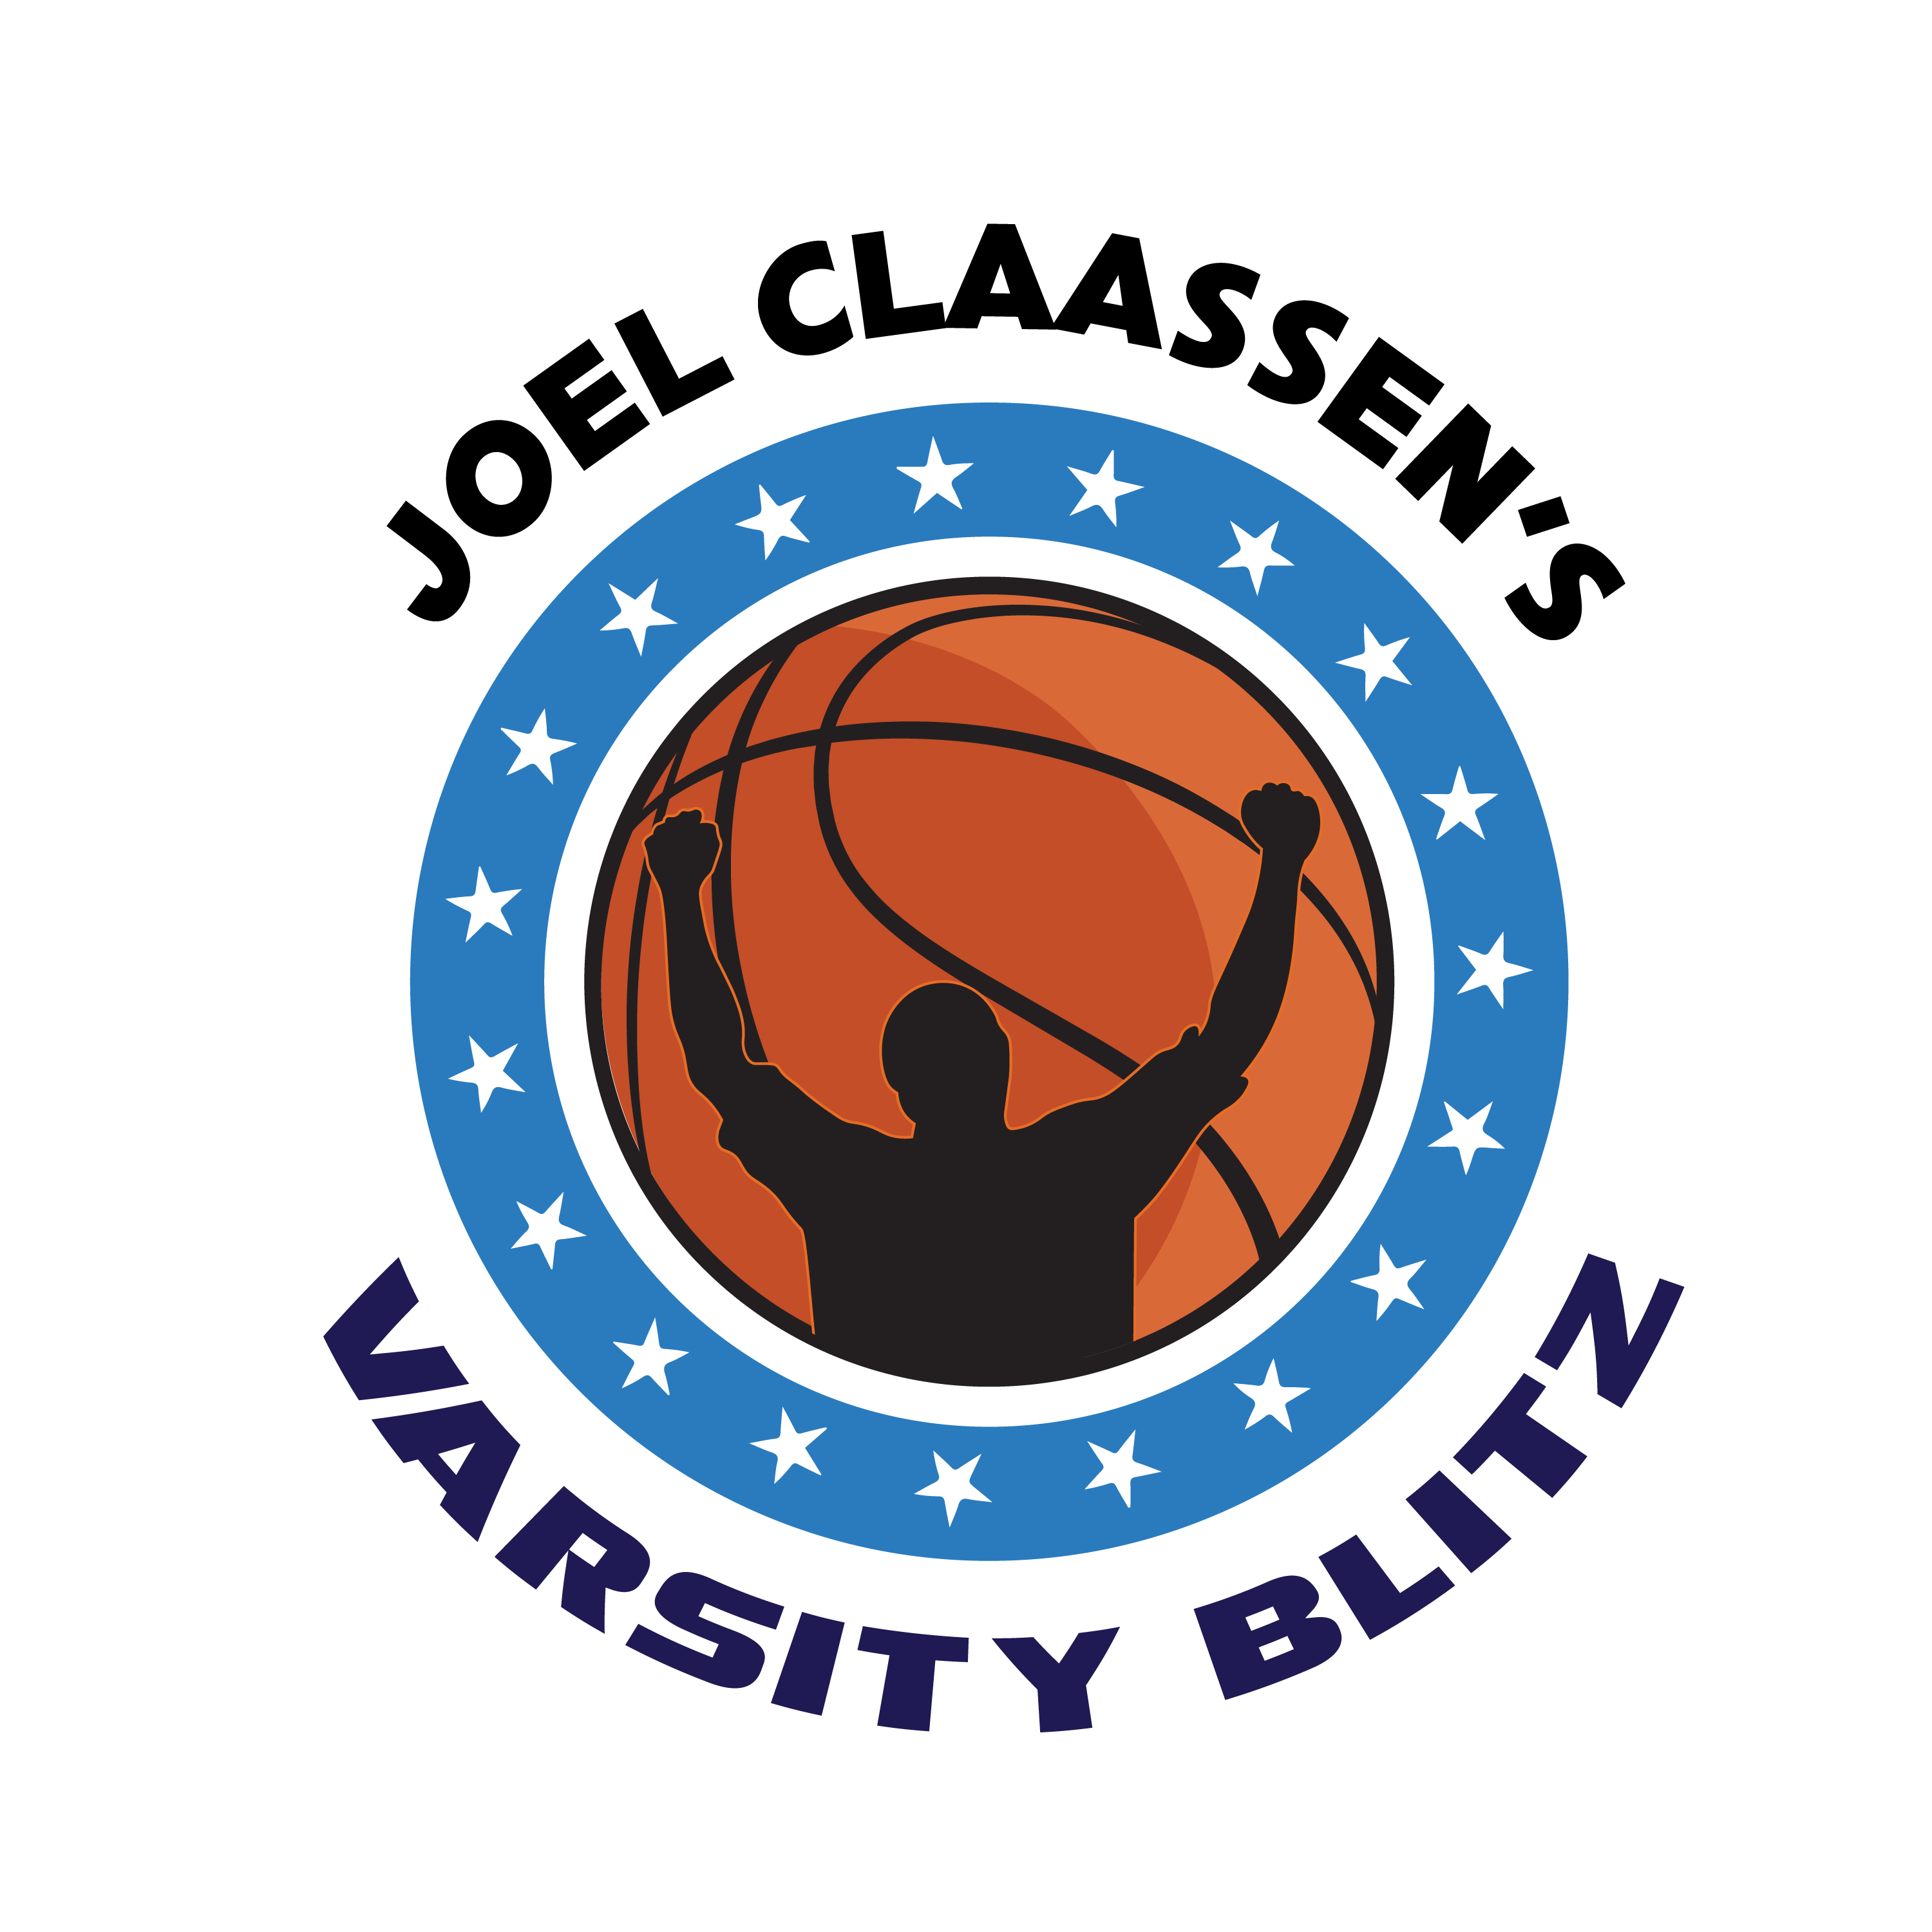 JoelClaassens-VarsityBlitz-Logo